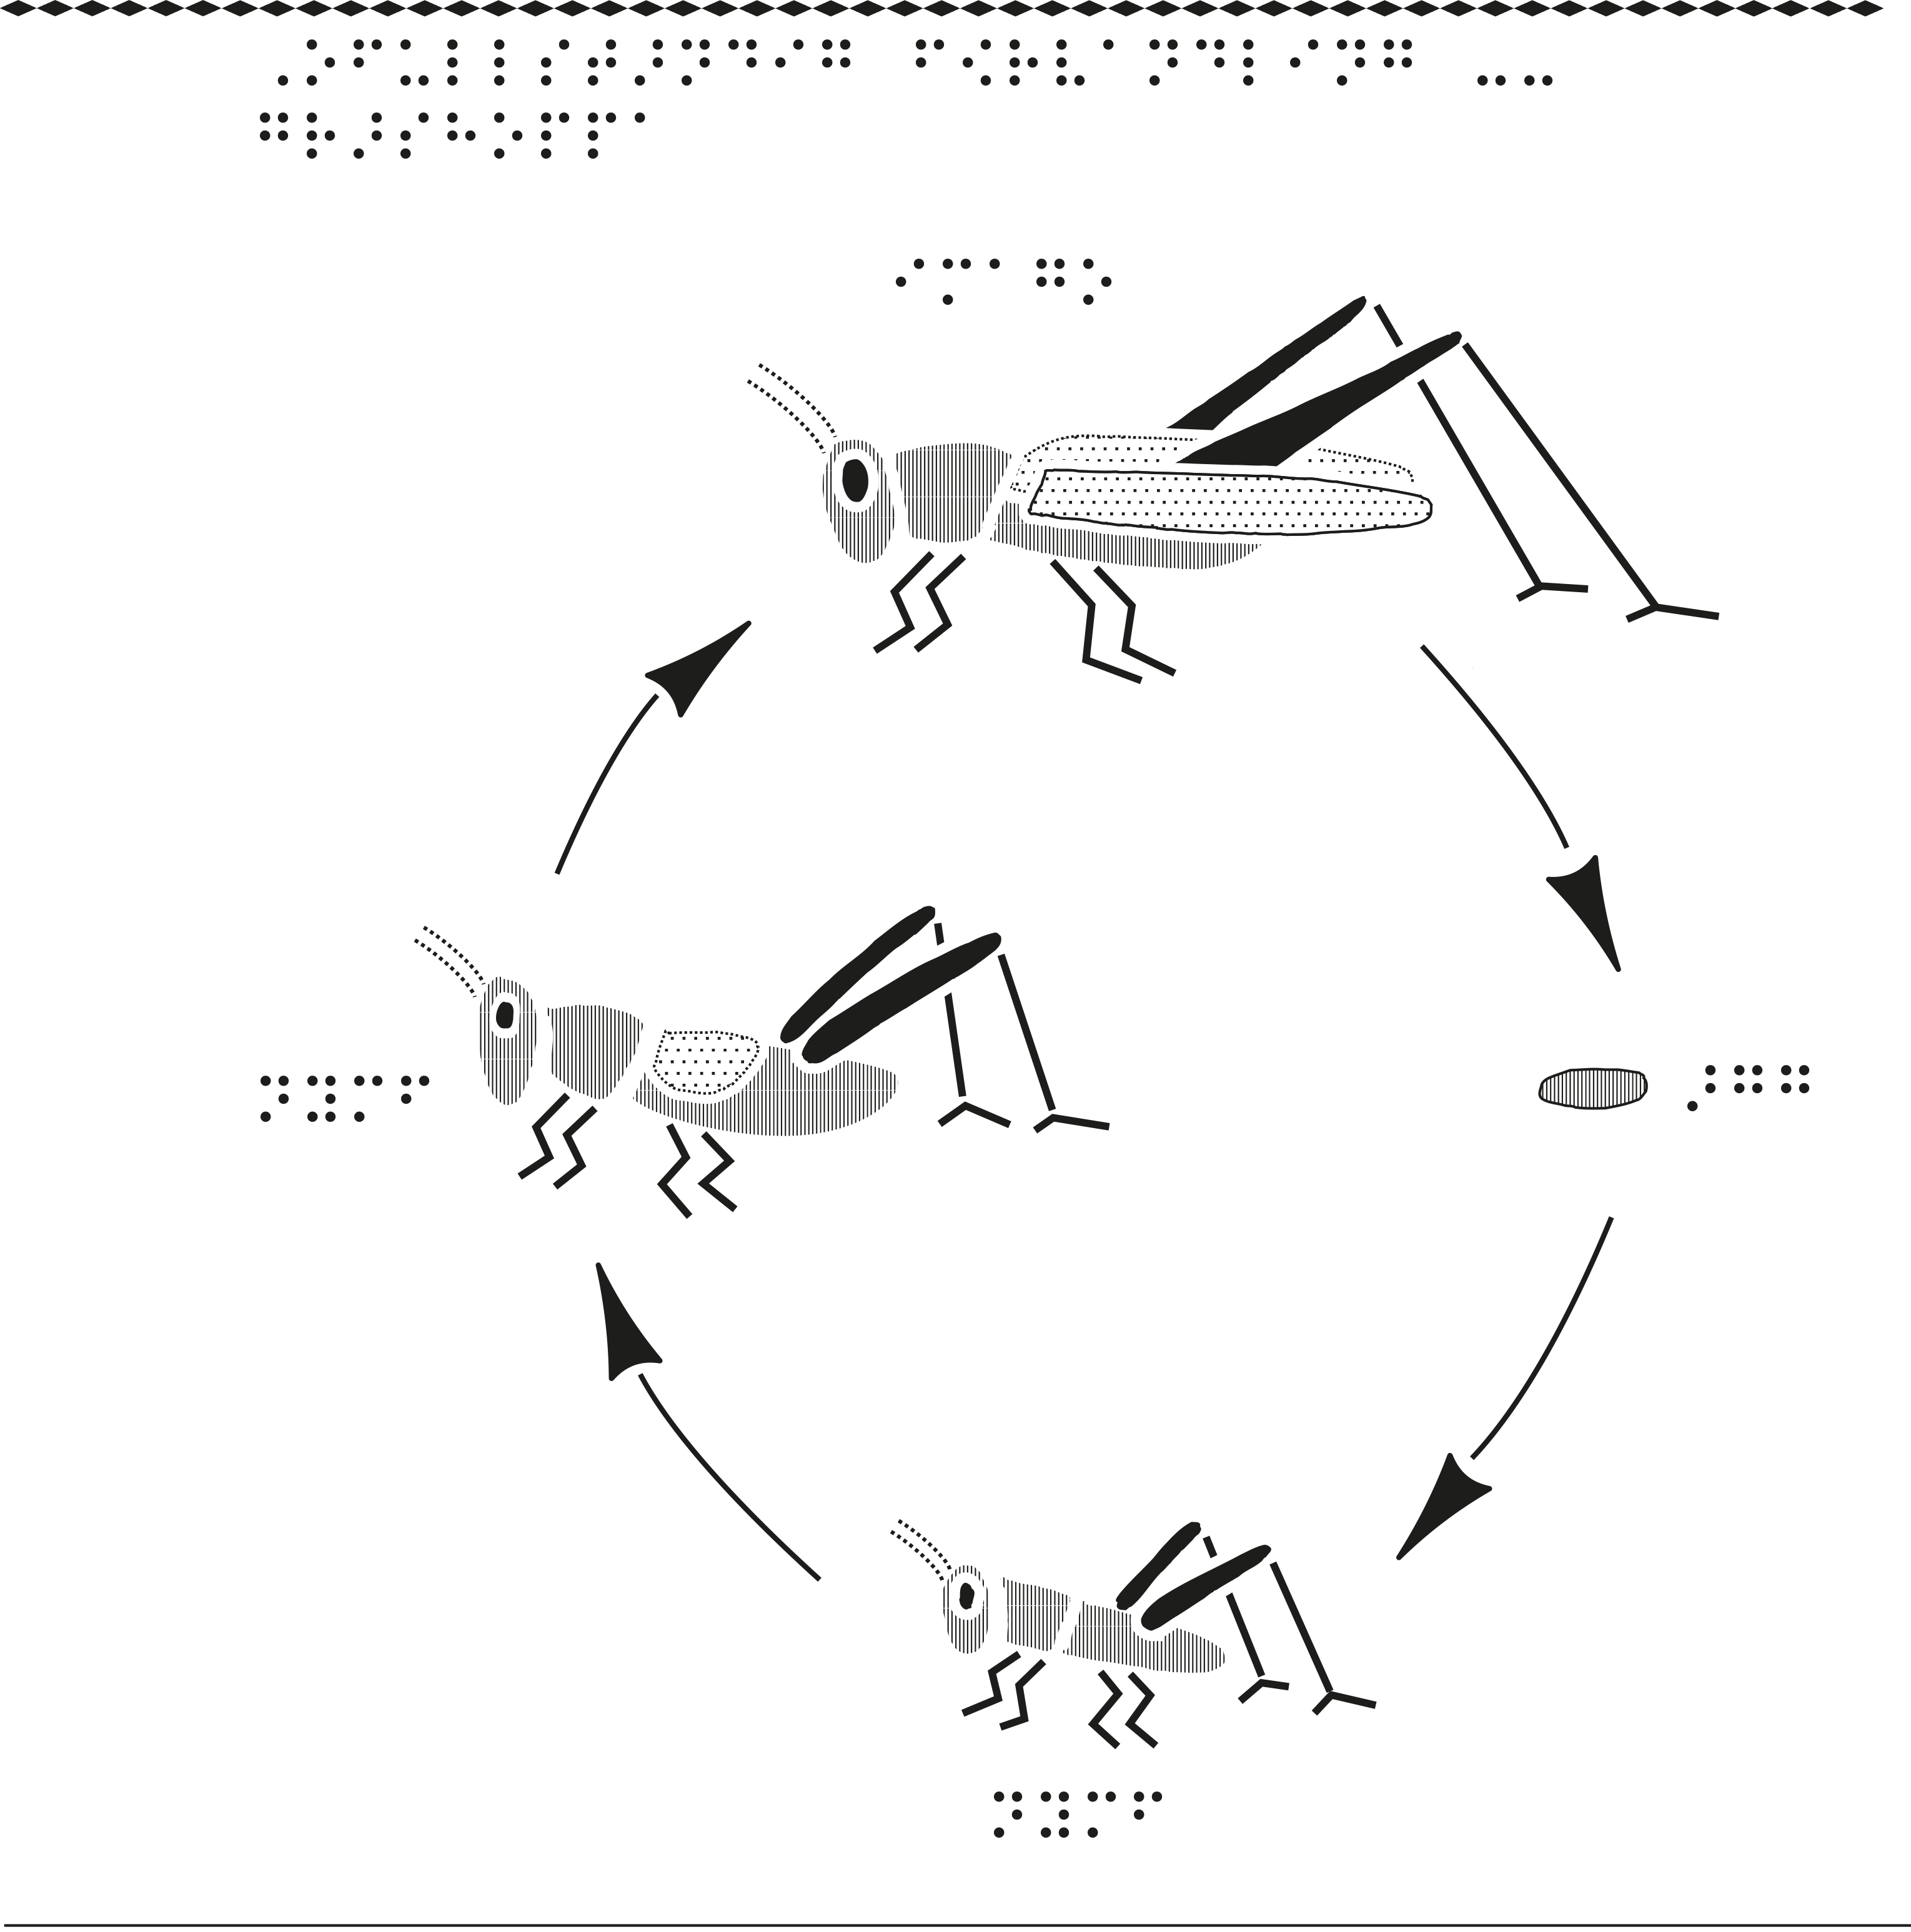 En del av gräshoppans utvecklingscykel.